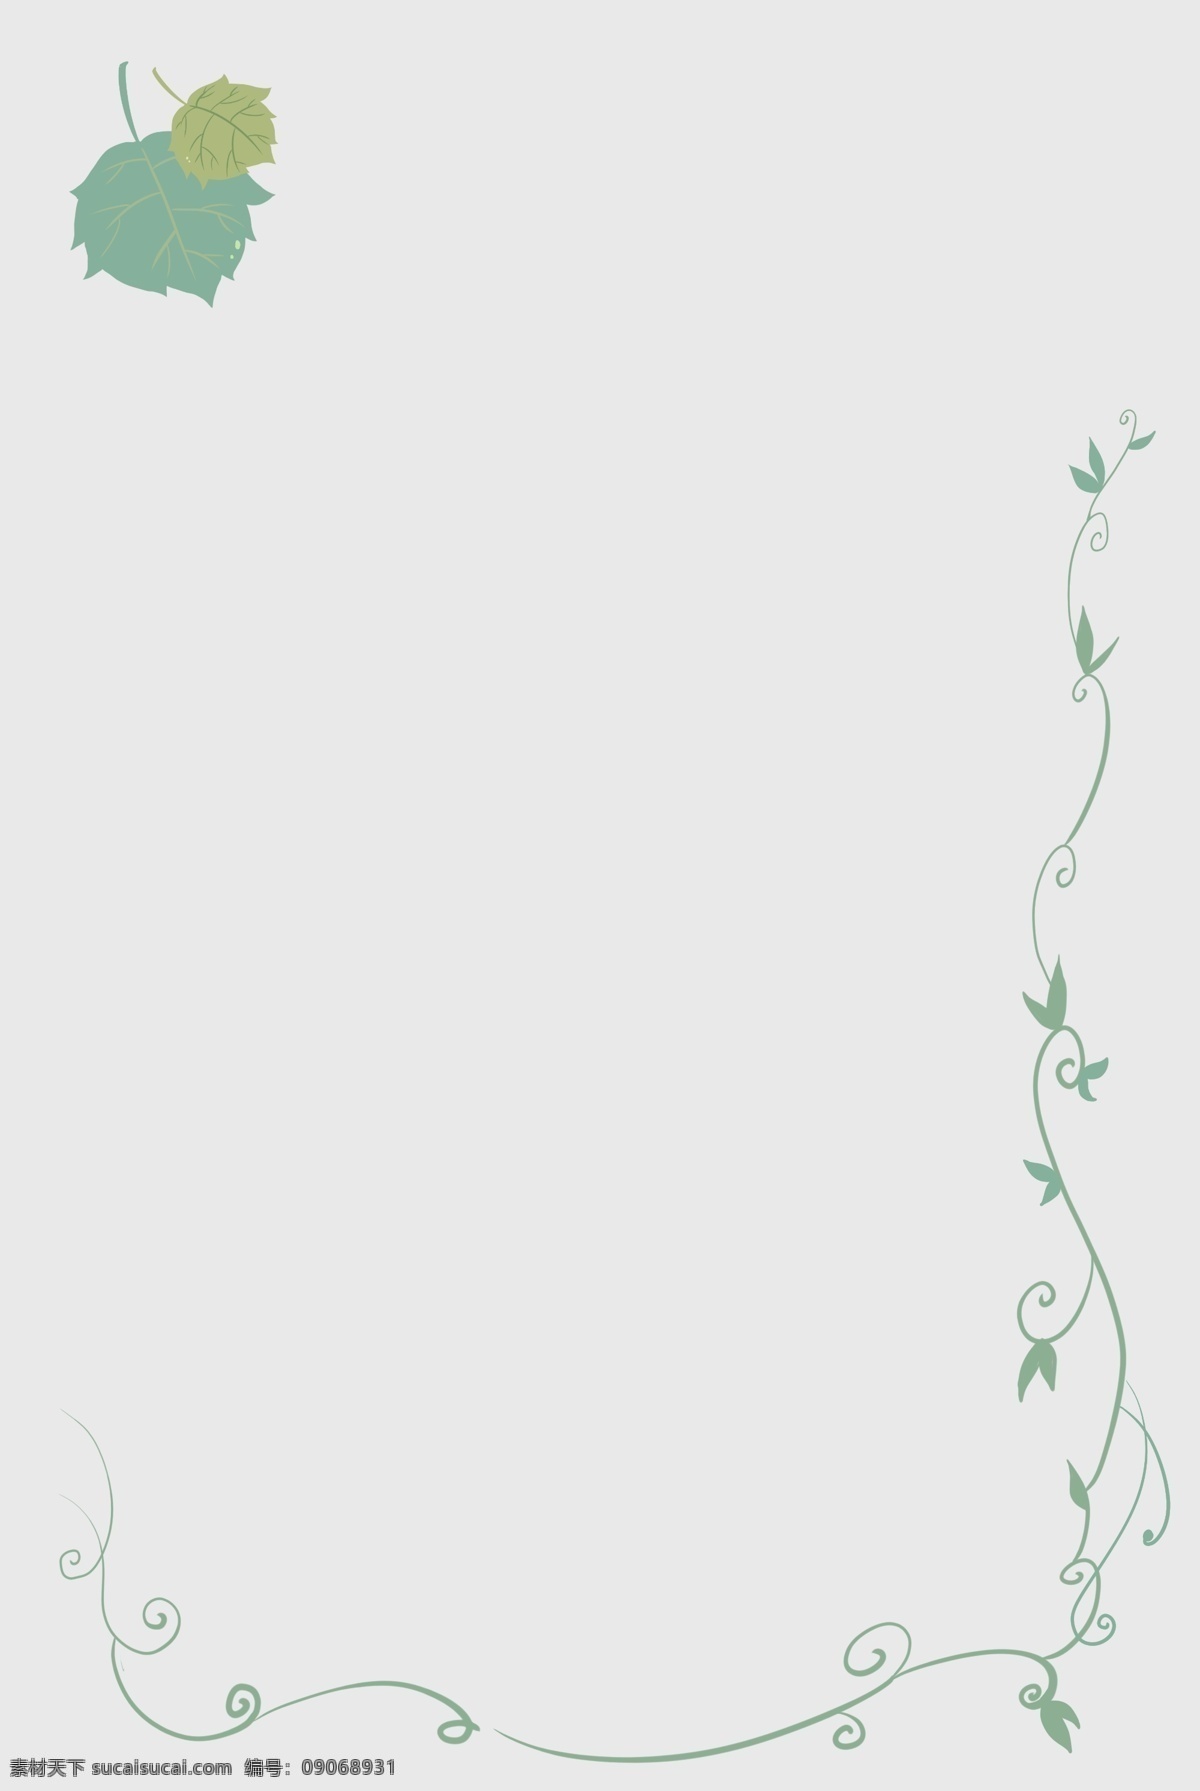 夏日 葡萄藤 叶片 边框 夏天 绿色 清新 海报招贴 涂鸦 插图 手账 叶脉 淡黄 淡绿